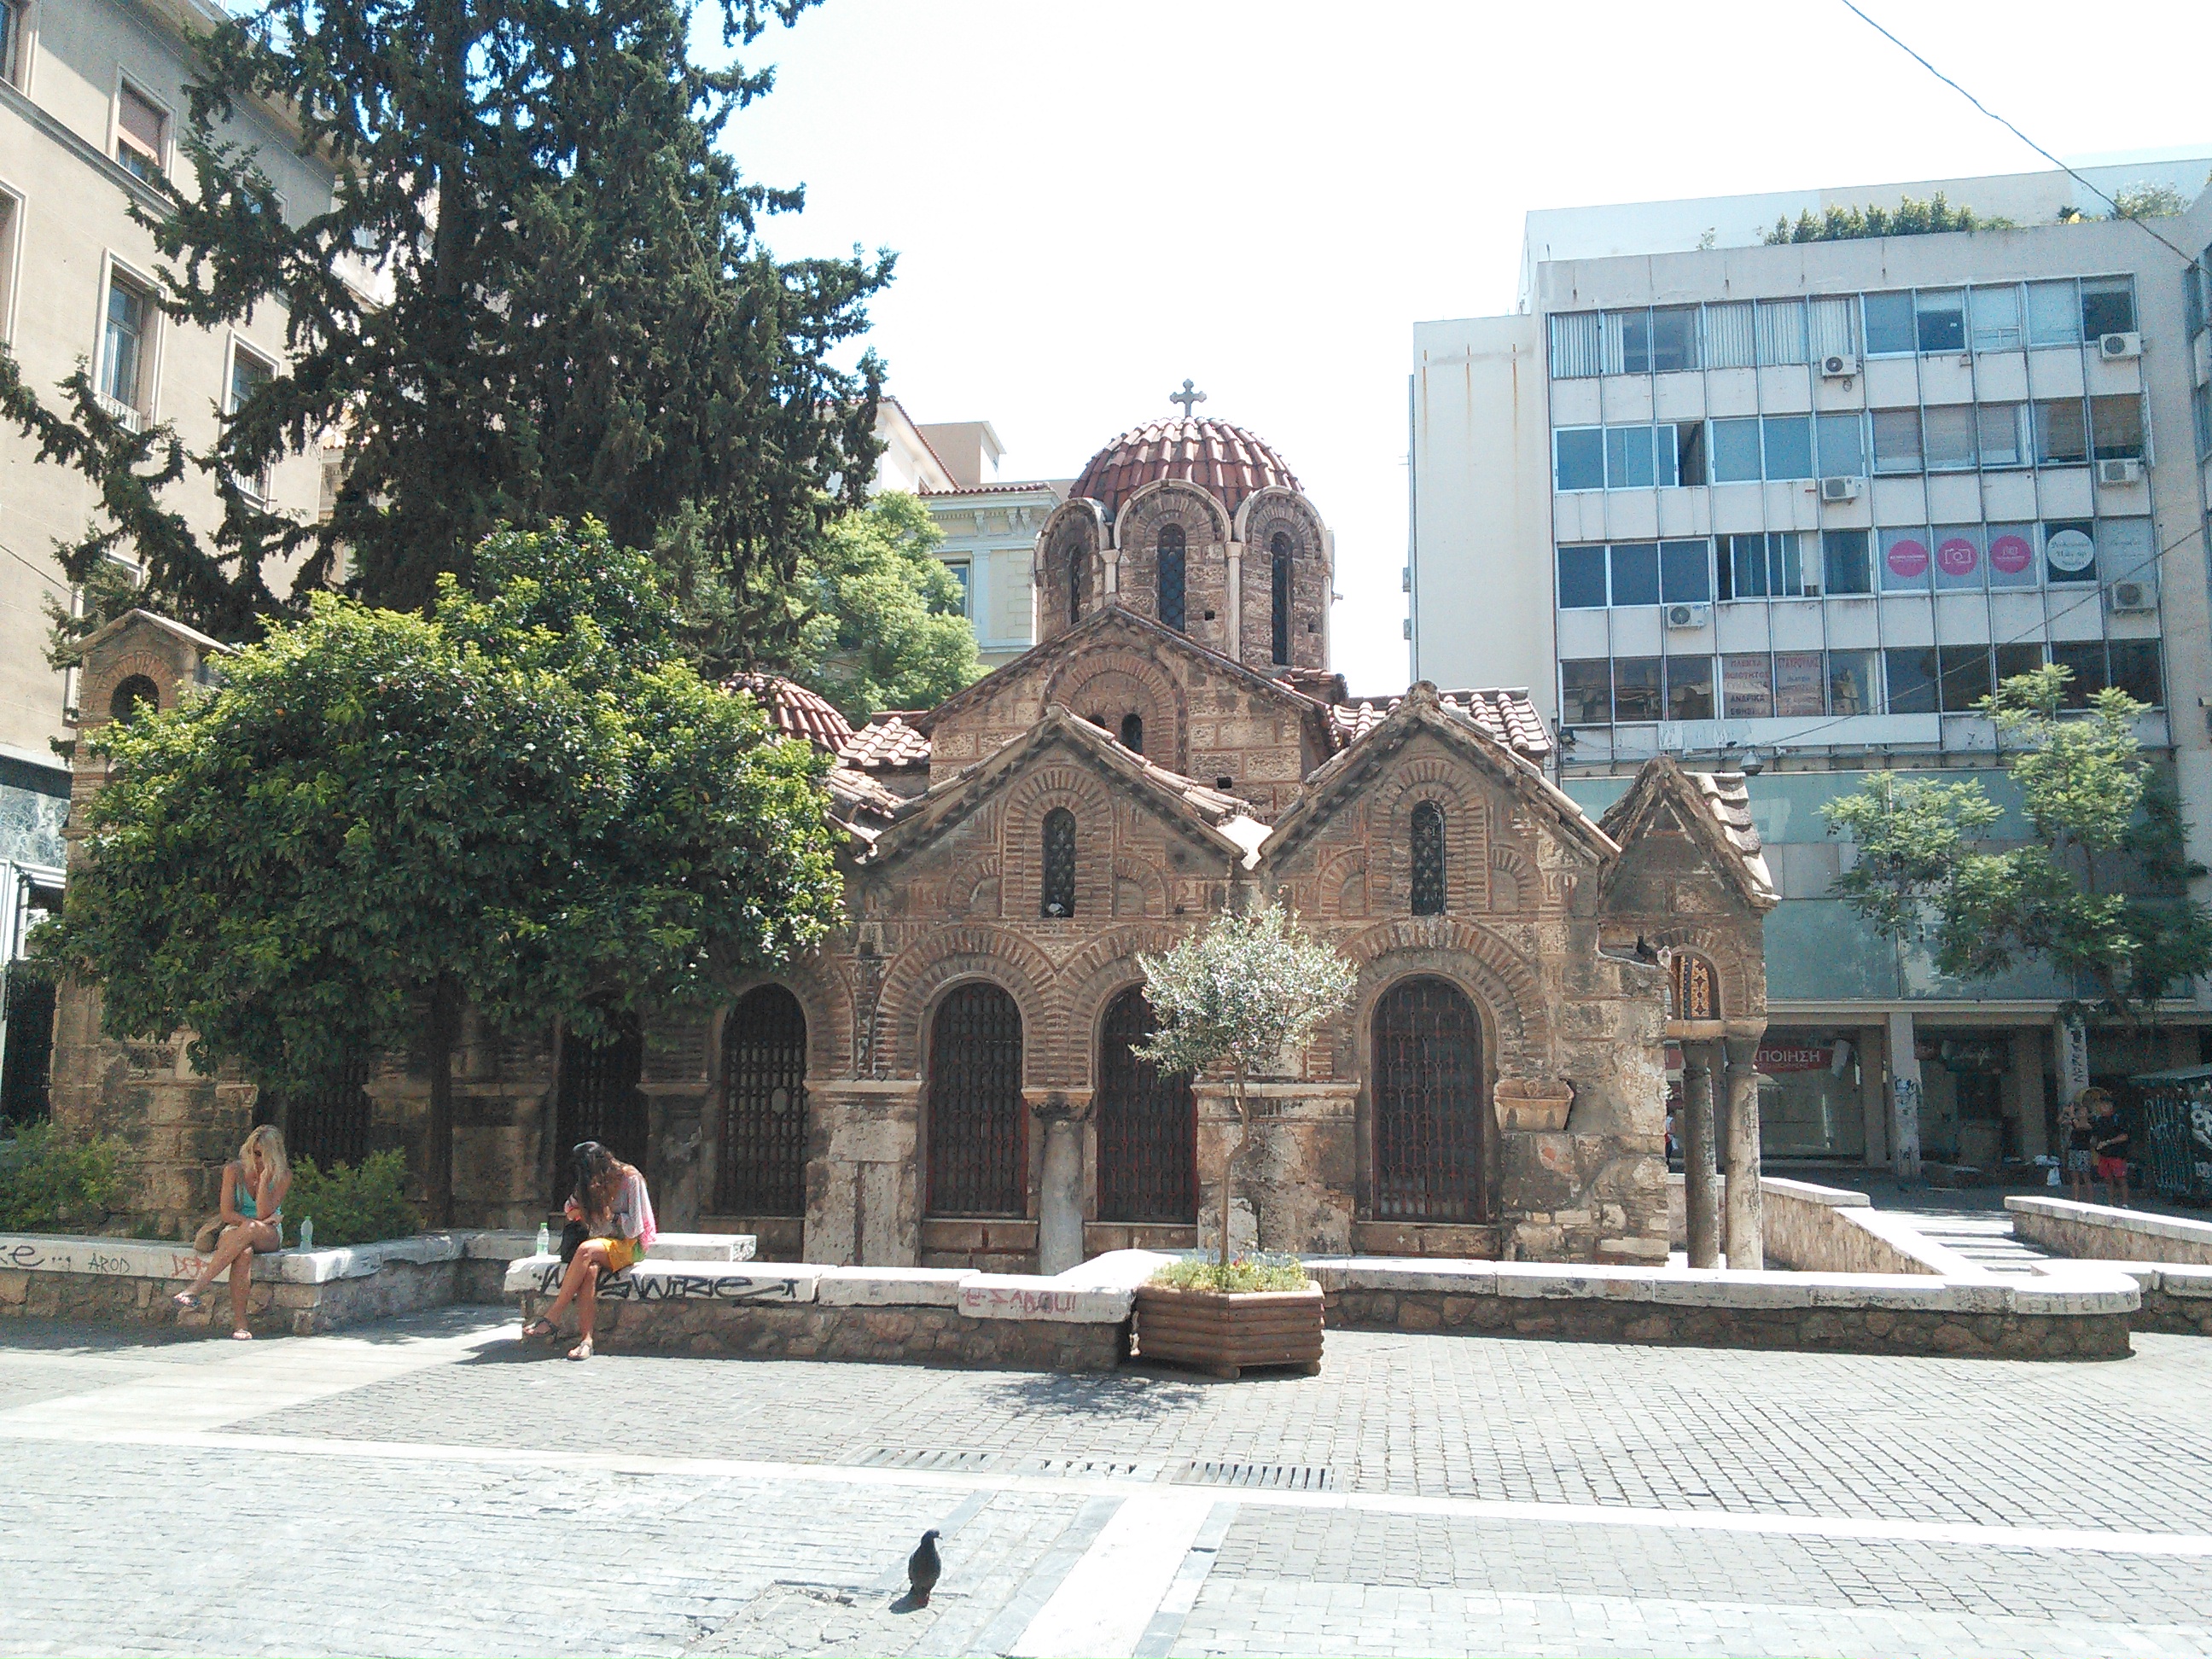 Athens Church of St. Amatos